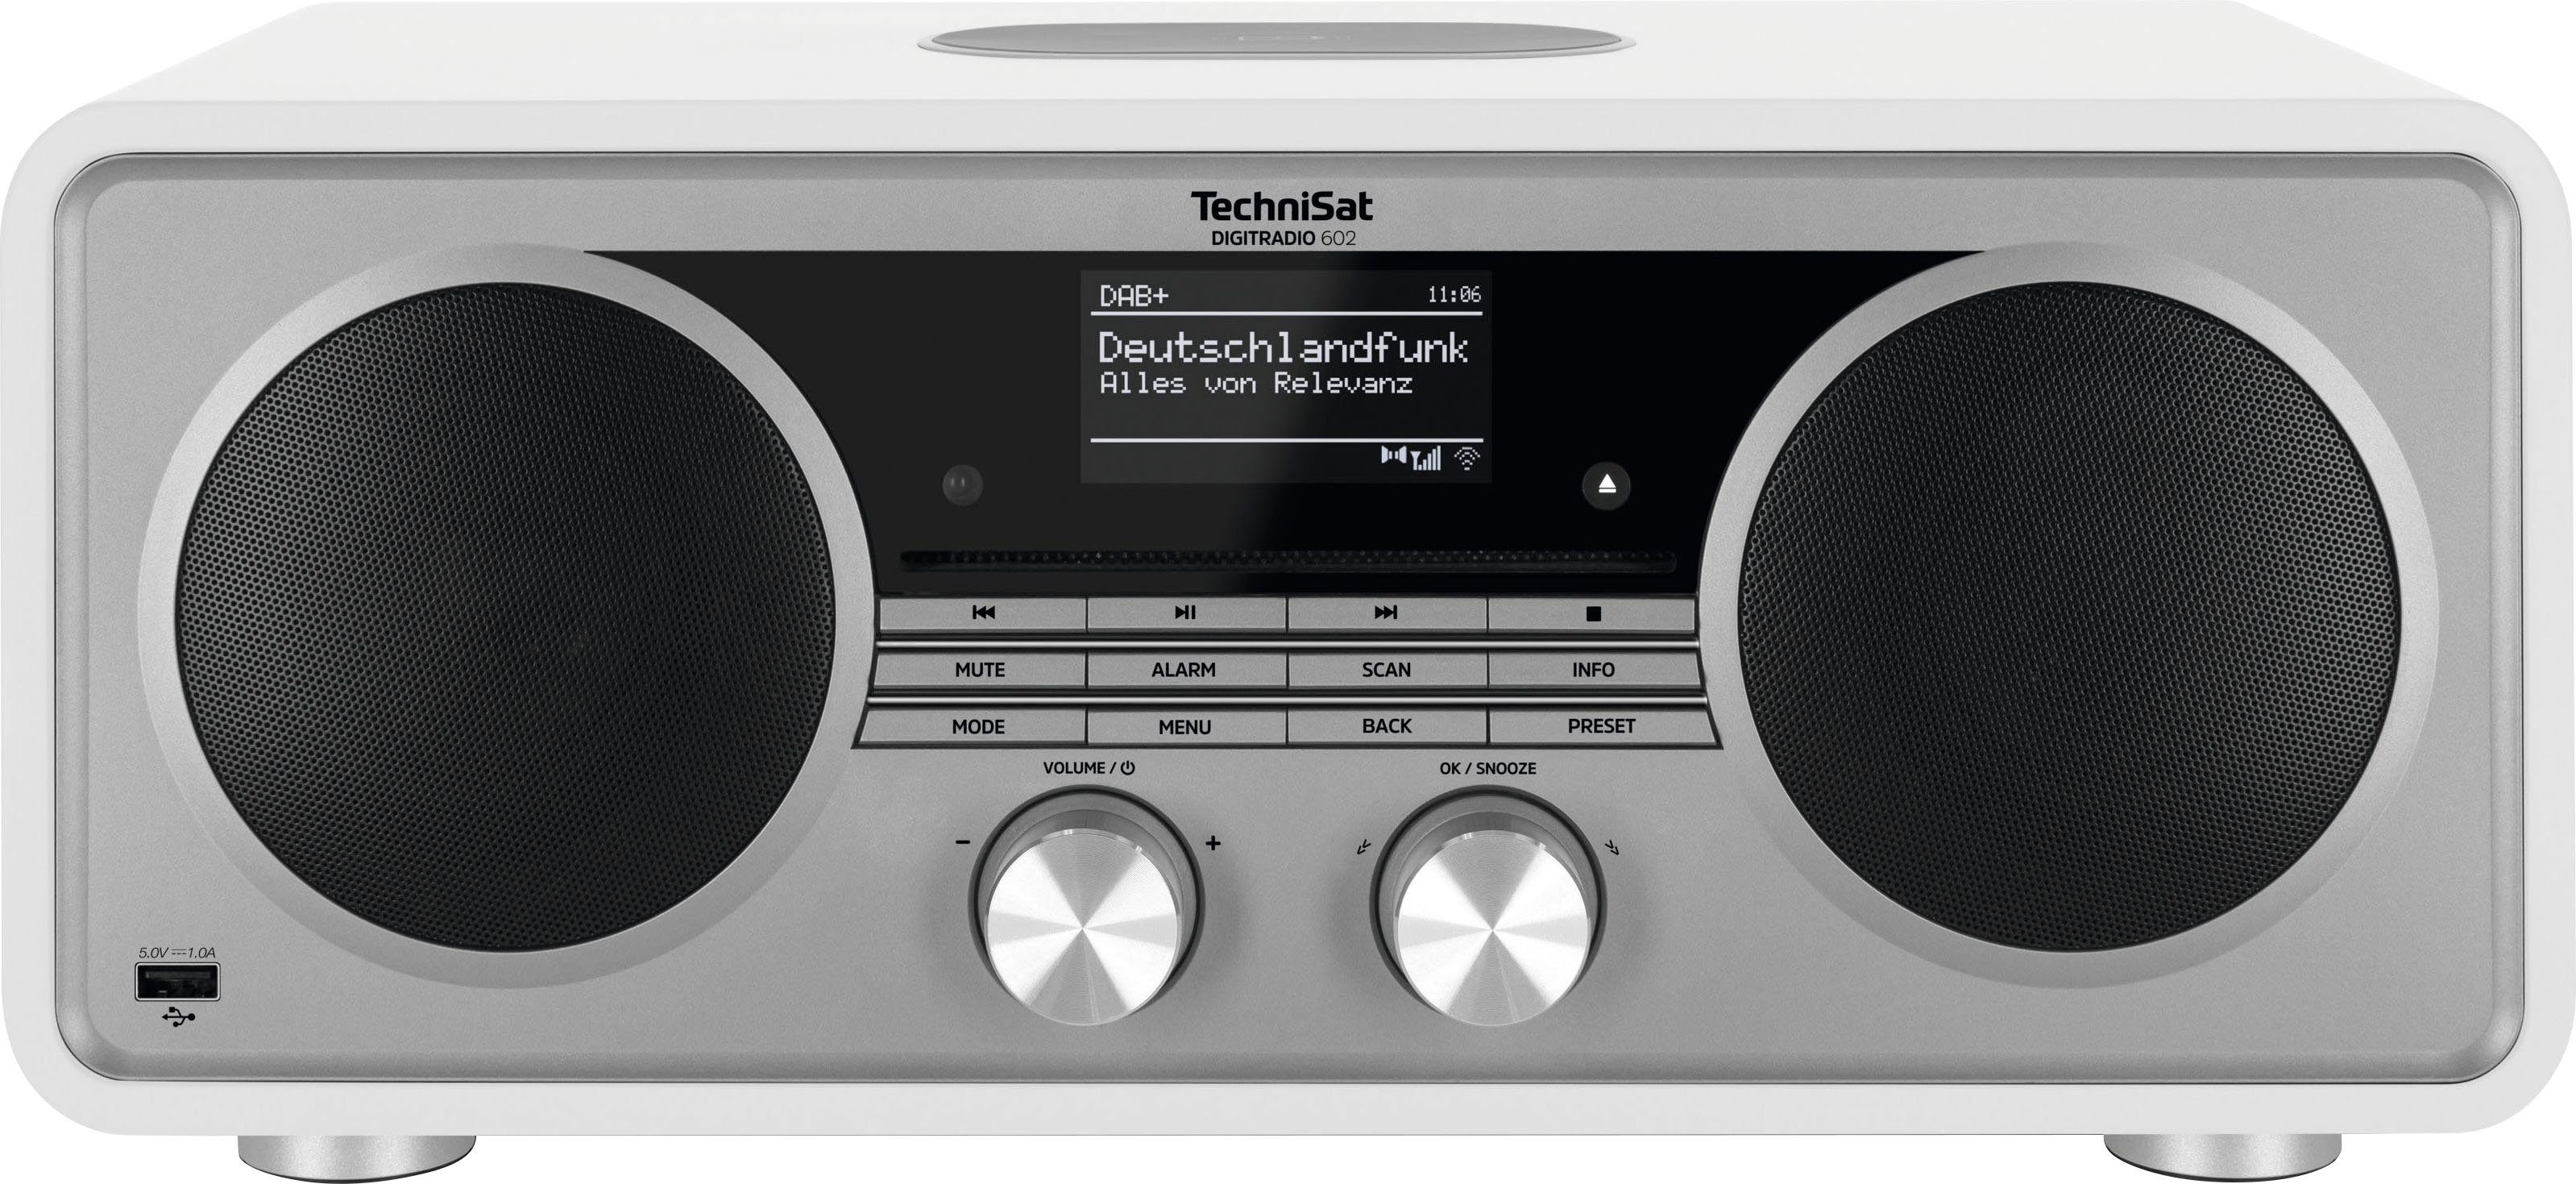 TechniSat DIGITRADIO 602 Internet-Radio (Digitalradio mit Stereoanlage, RDS, (DAB), UKW 70 CD-Player) Weiß/Silber W